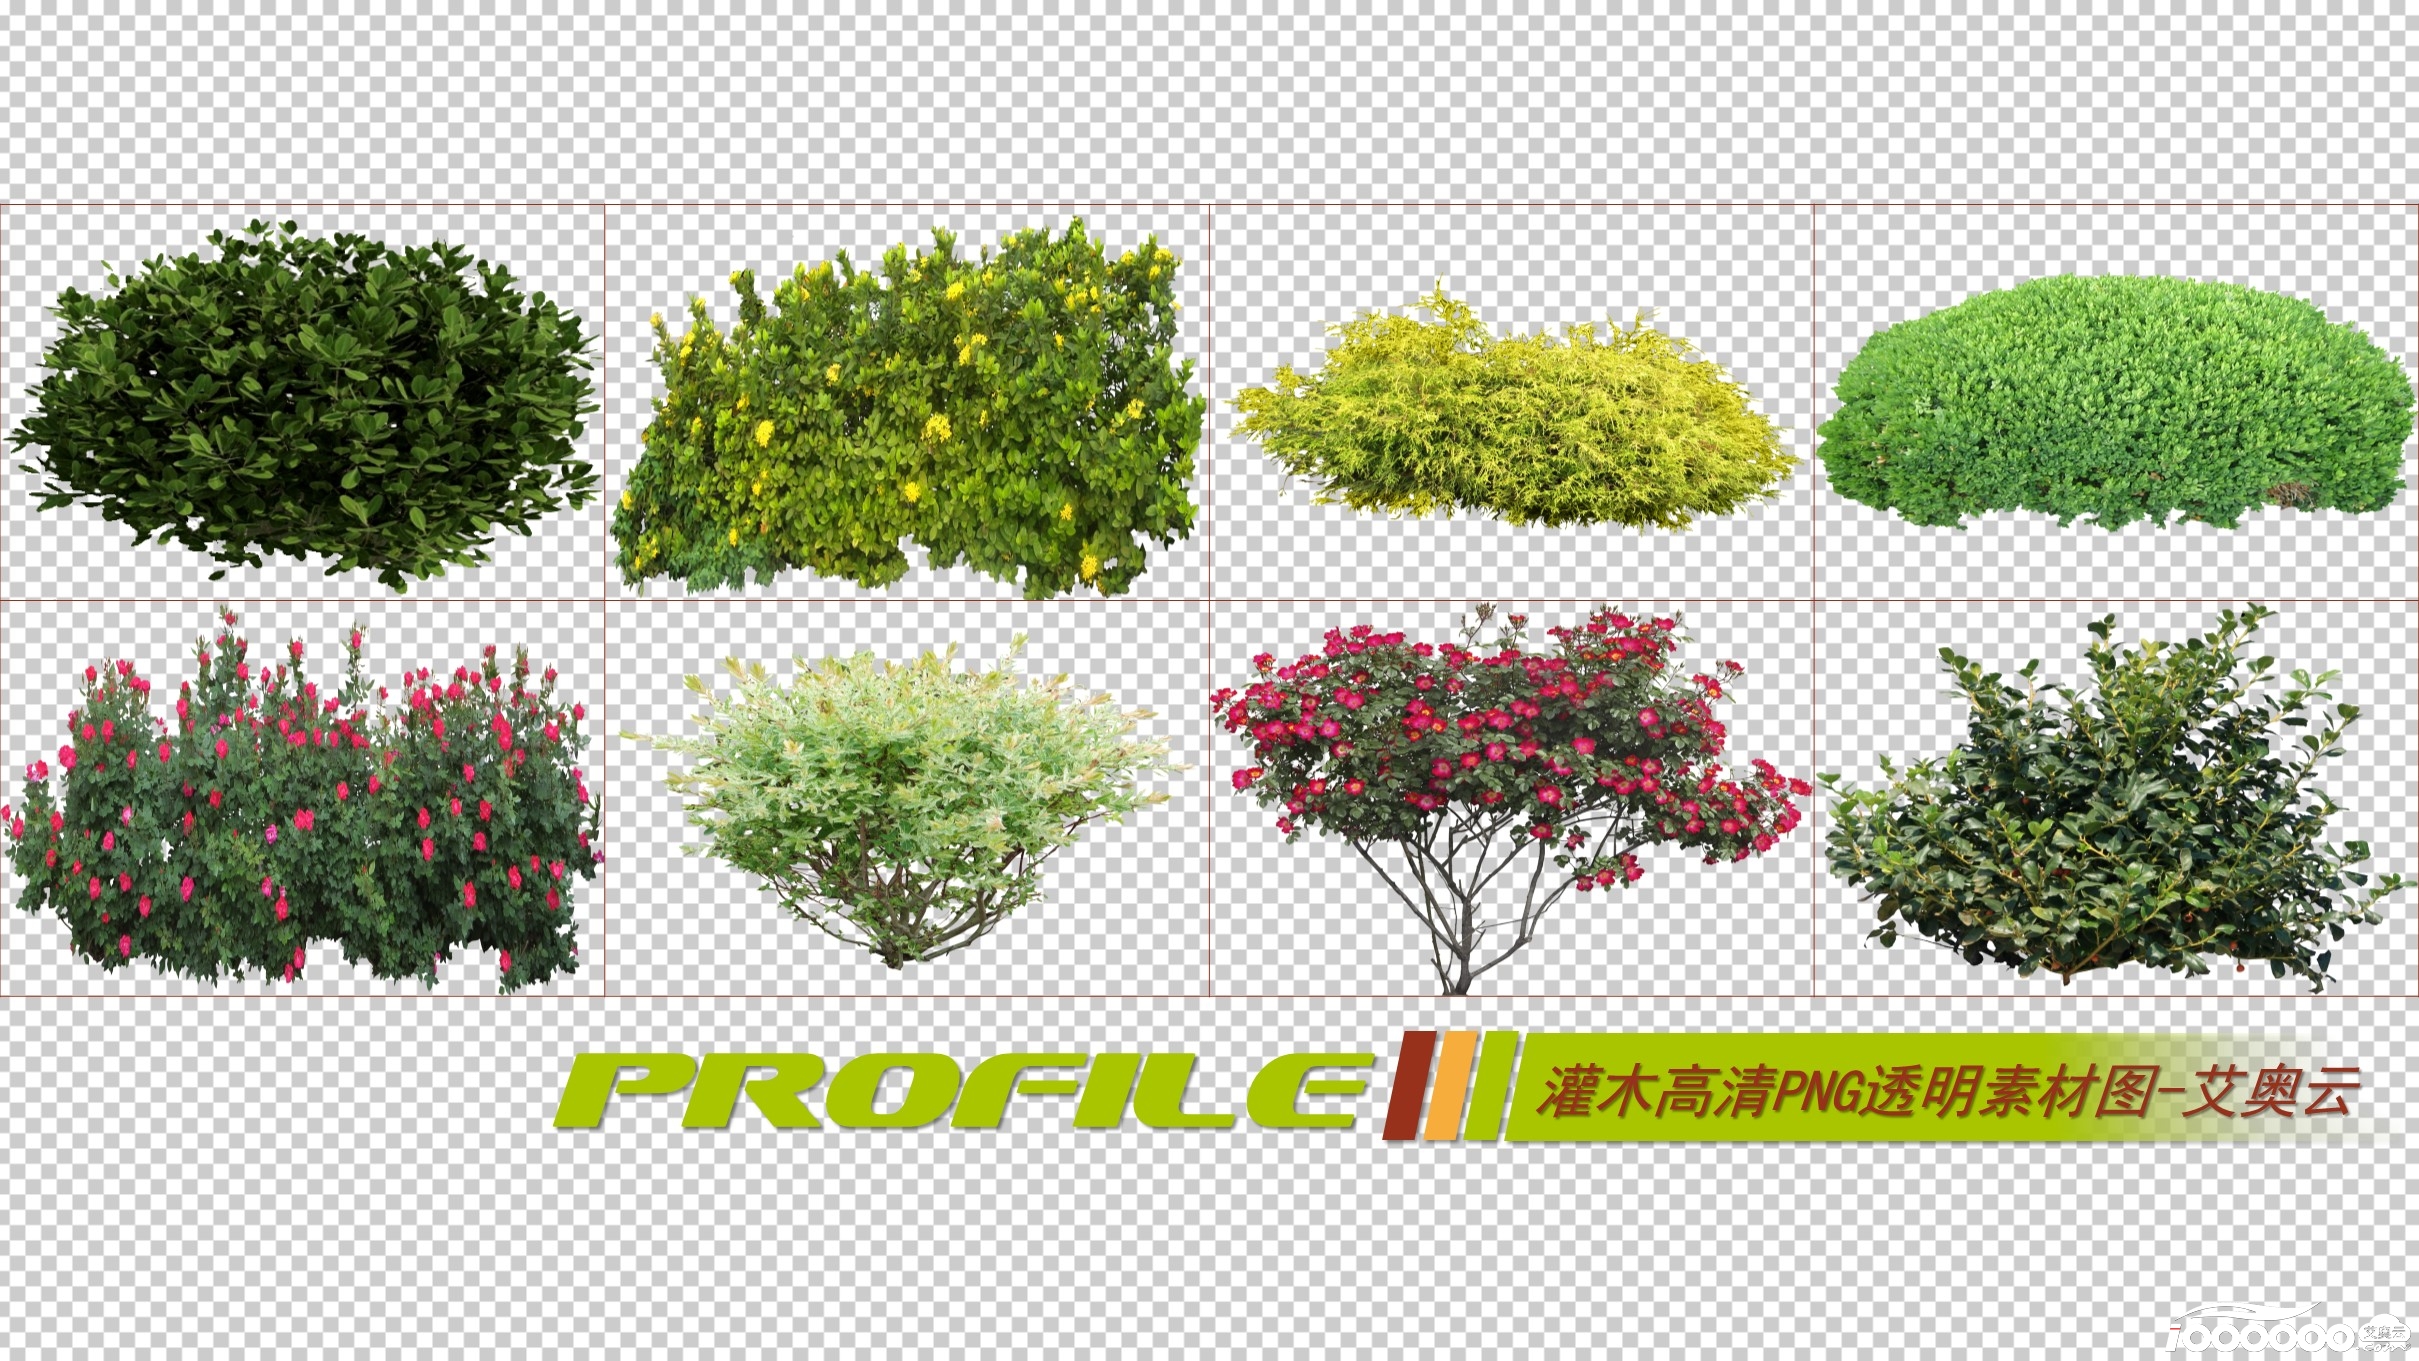 灌木高清png透明图片图形素材打包免费下载 (2).JPG